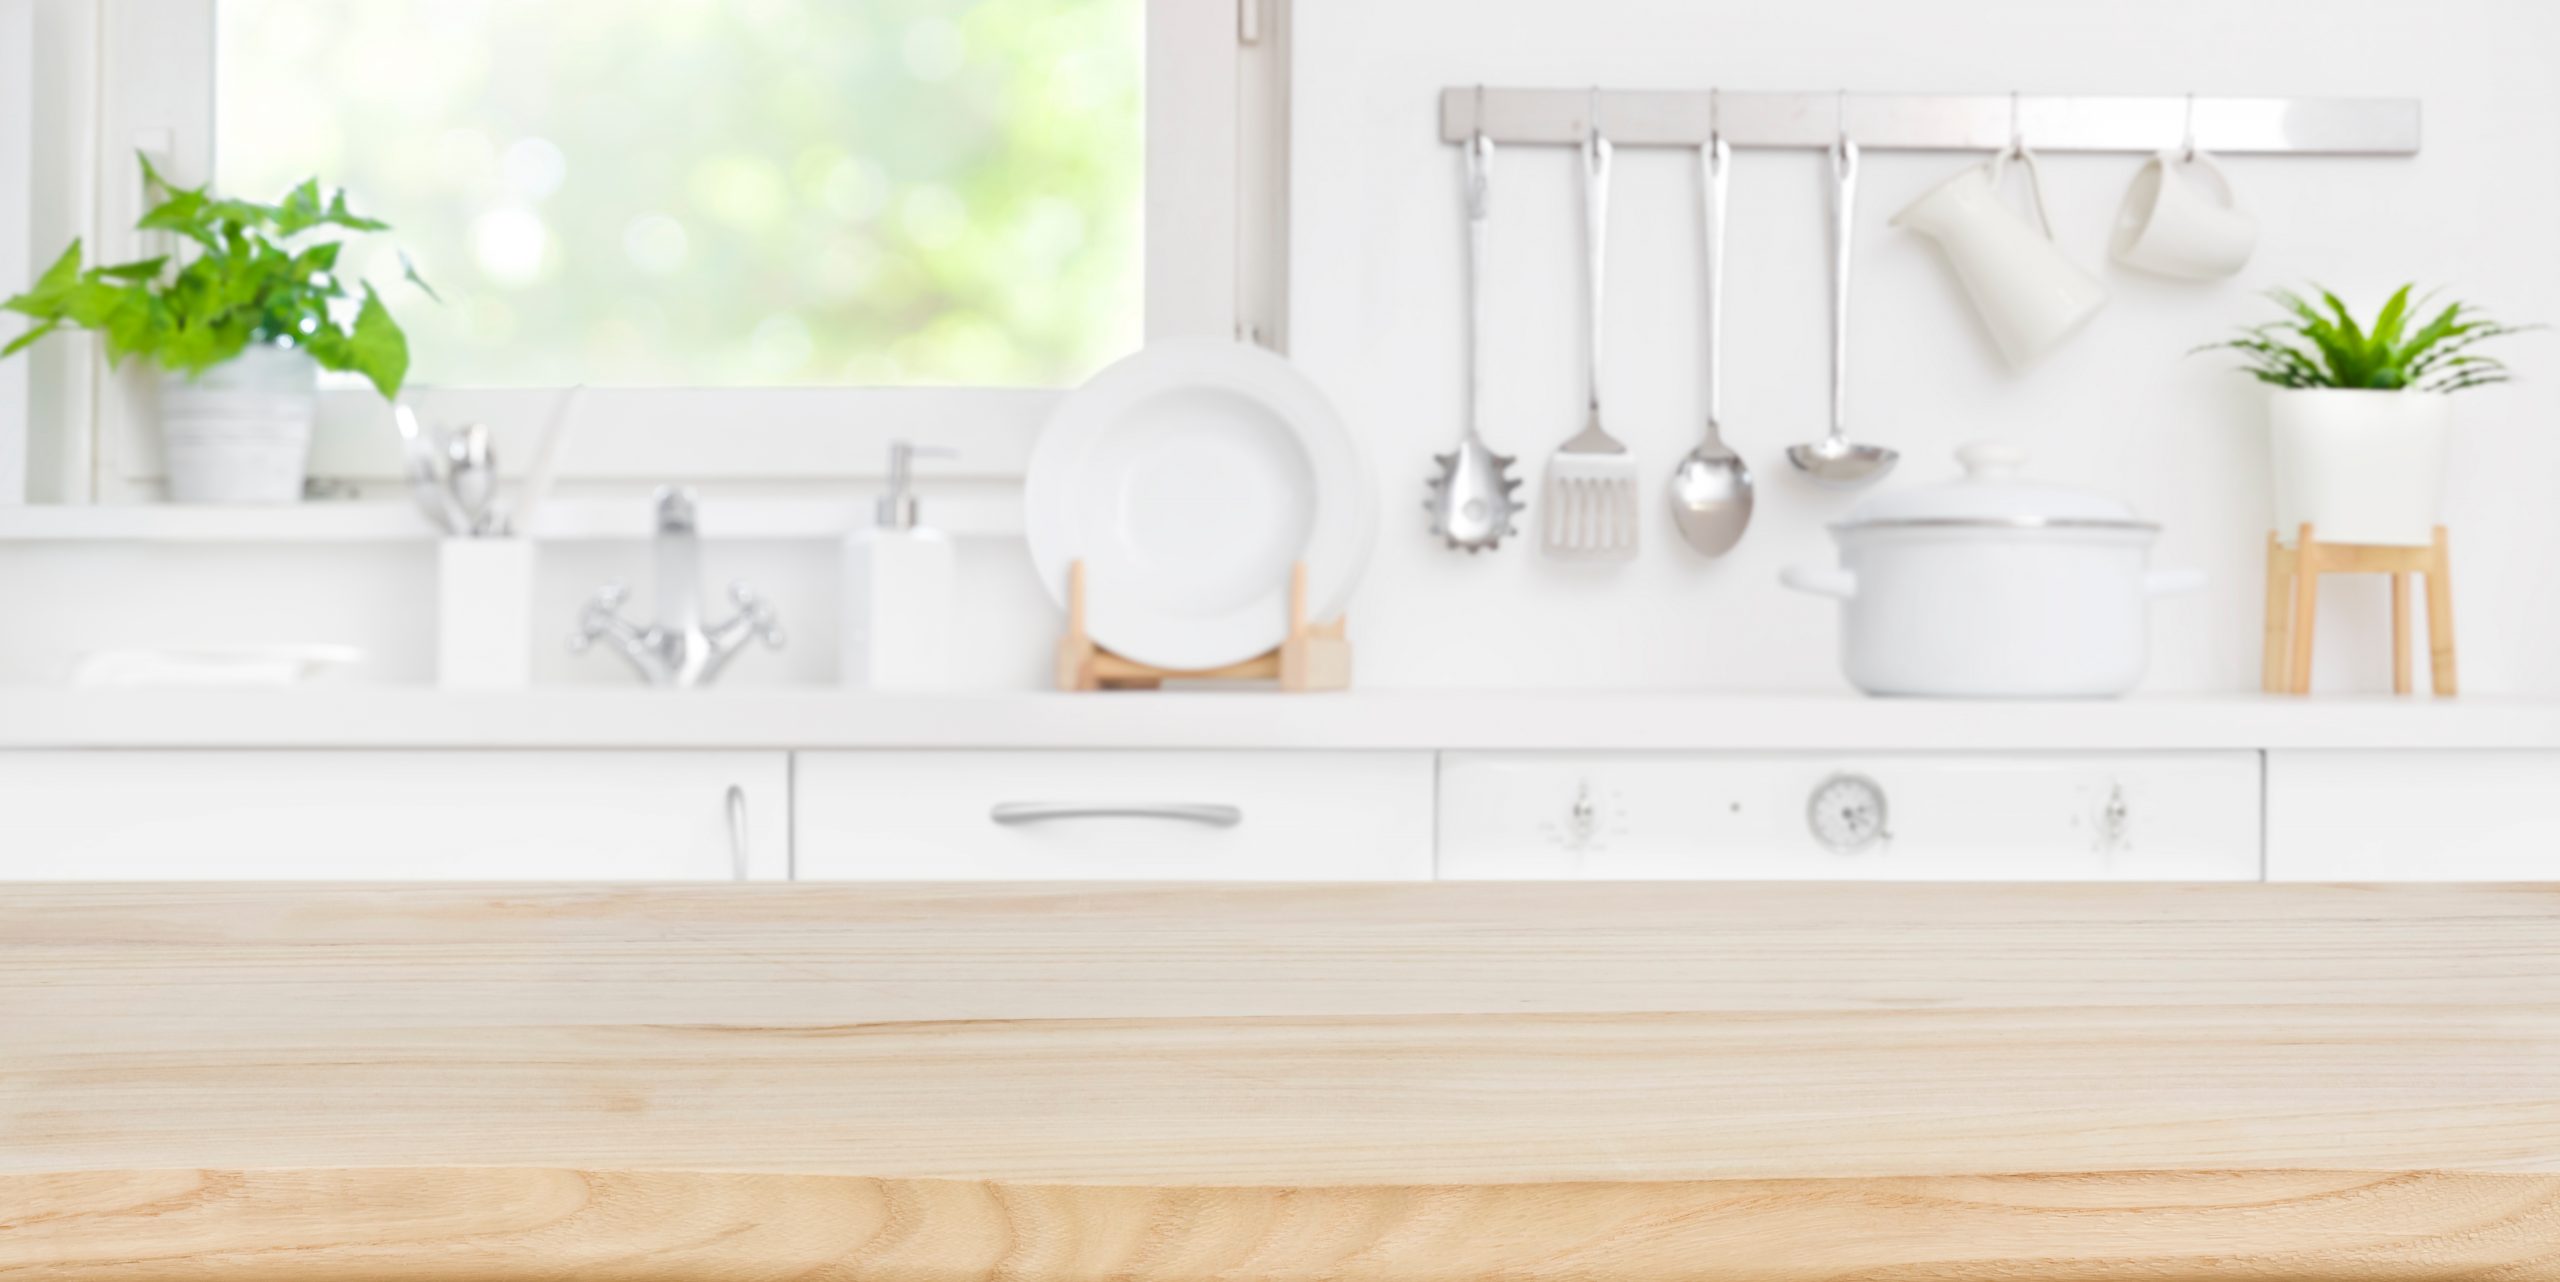 Witte keuken met keukengerei | Tips om keuken op te ruimen en een ideale keukenindeling